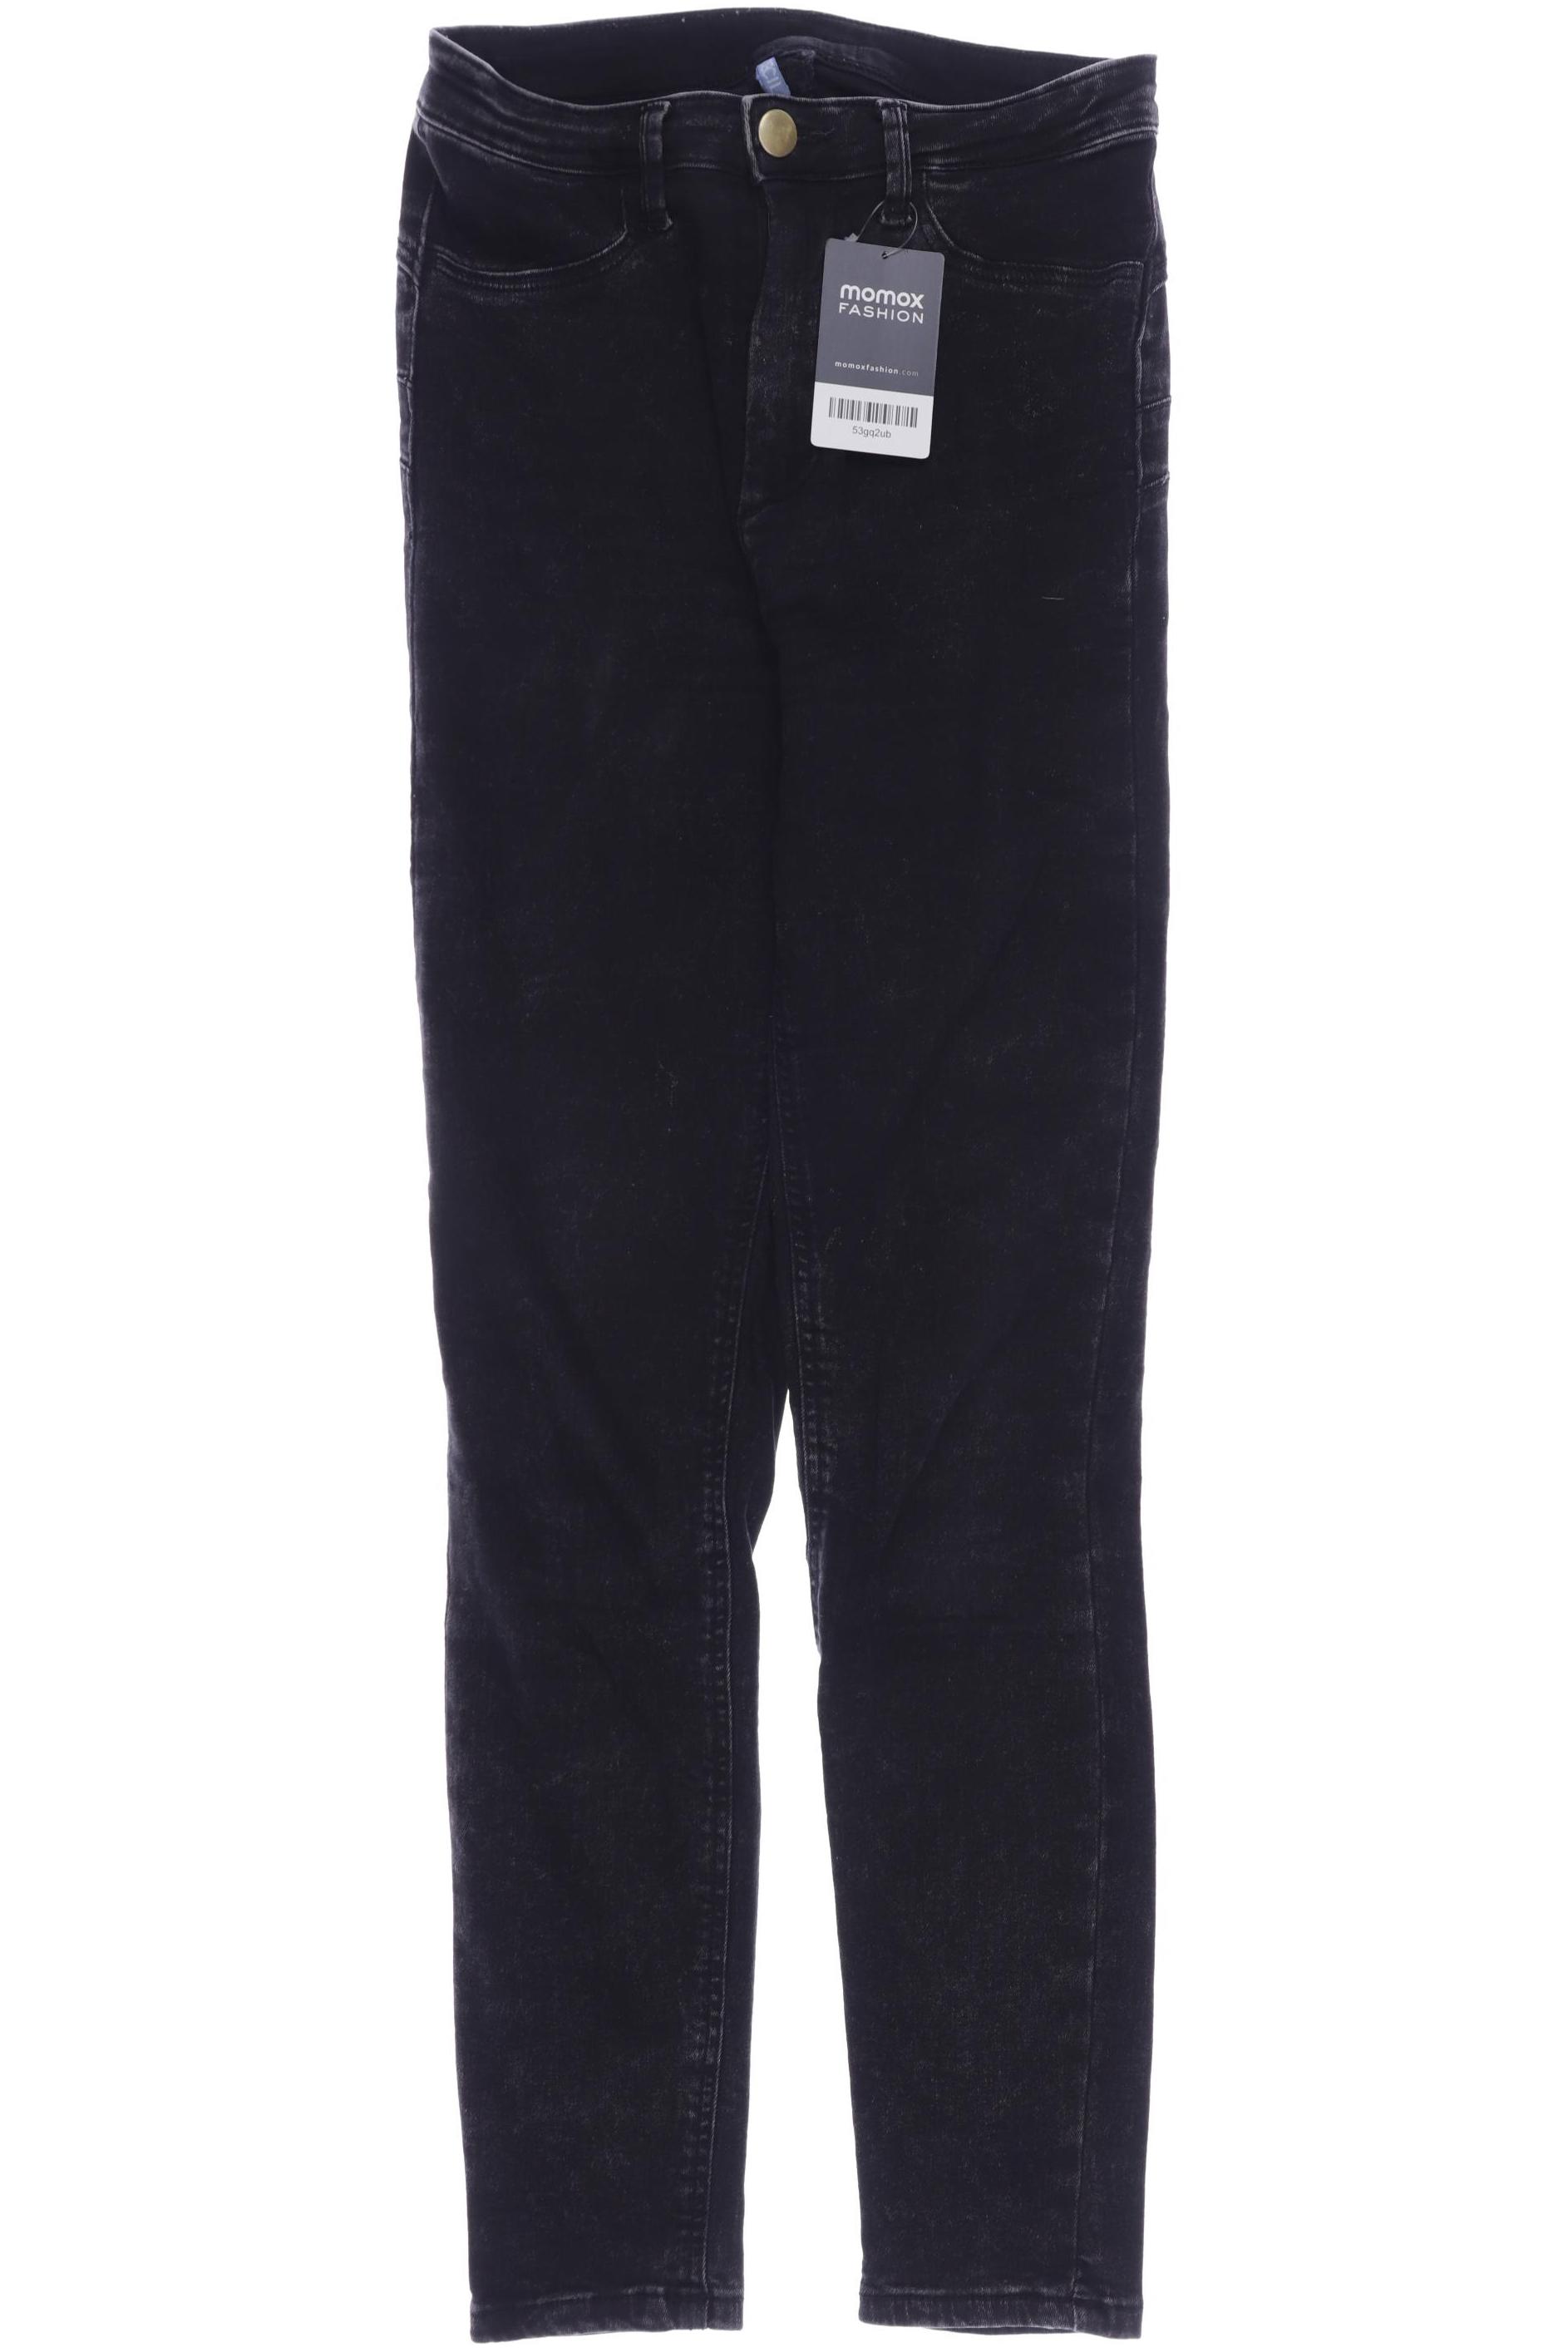 Cecil Damen Jeans, schwarz, Gr. 32 von cecil